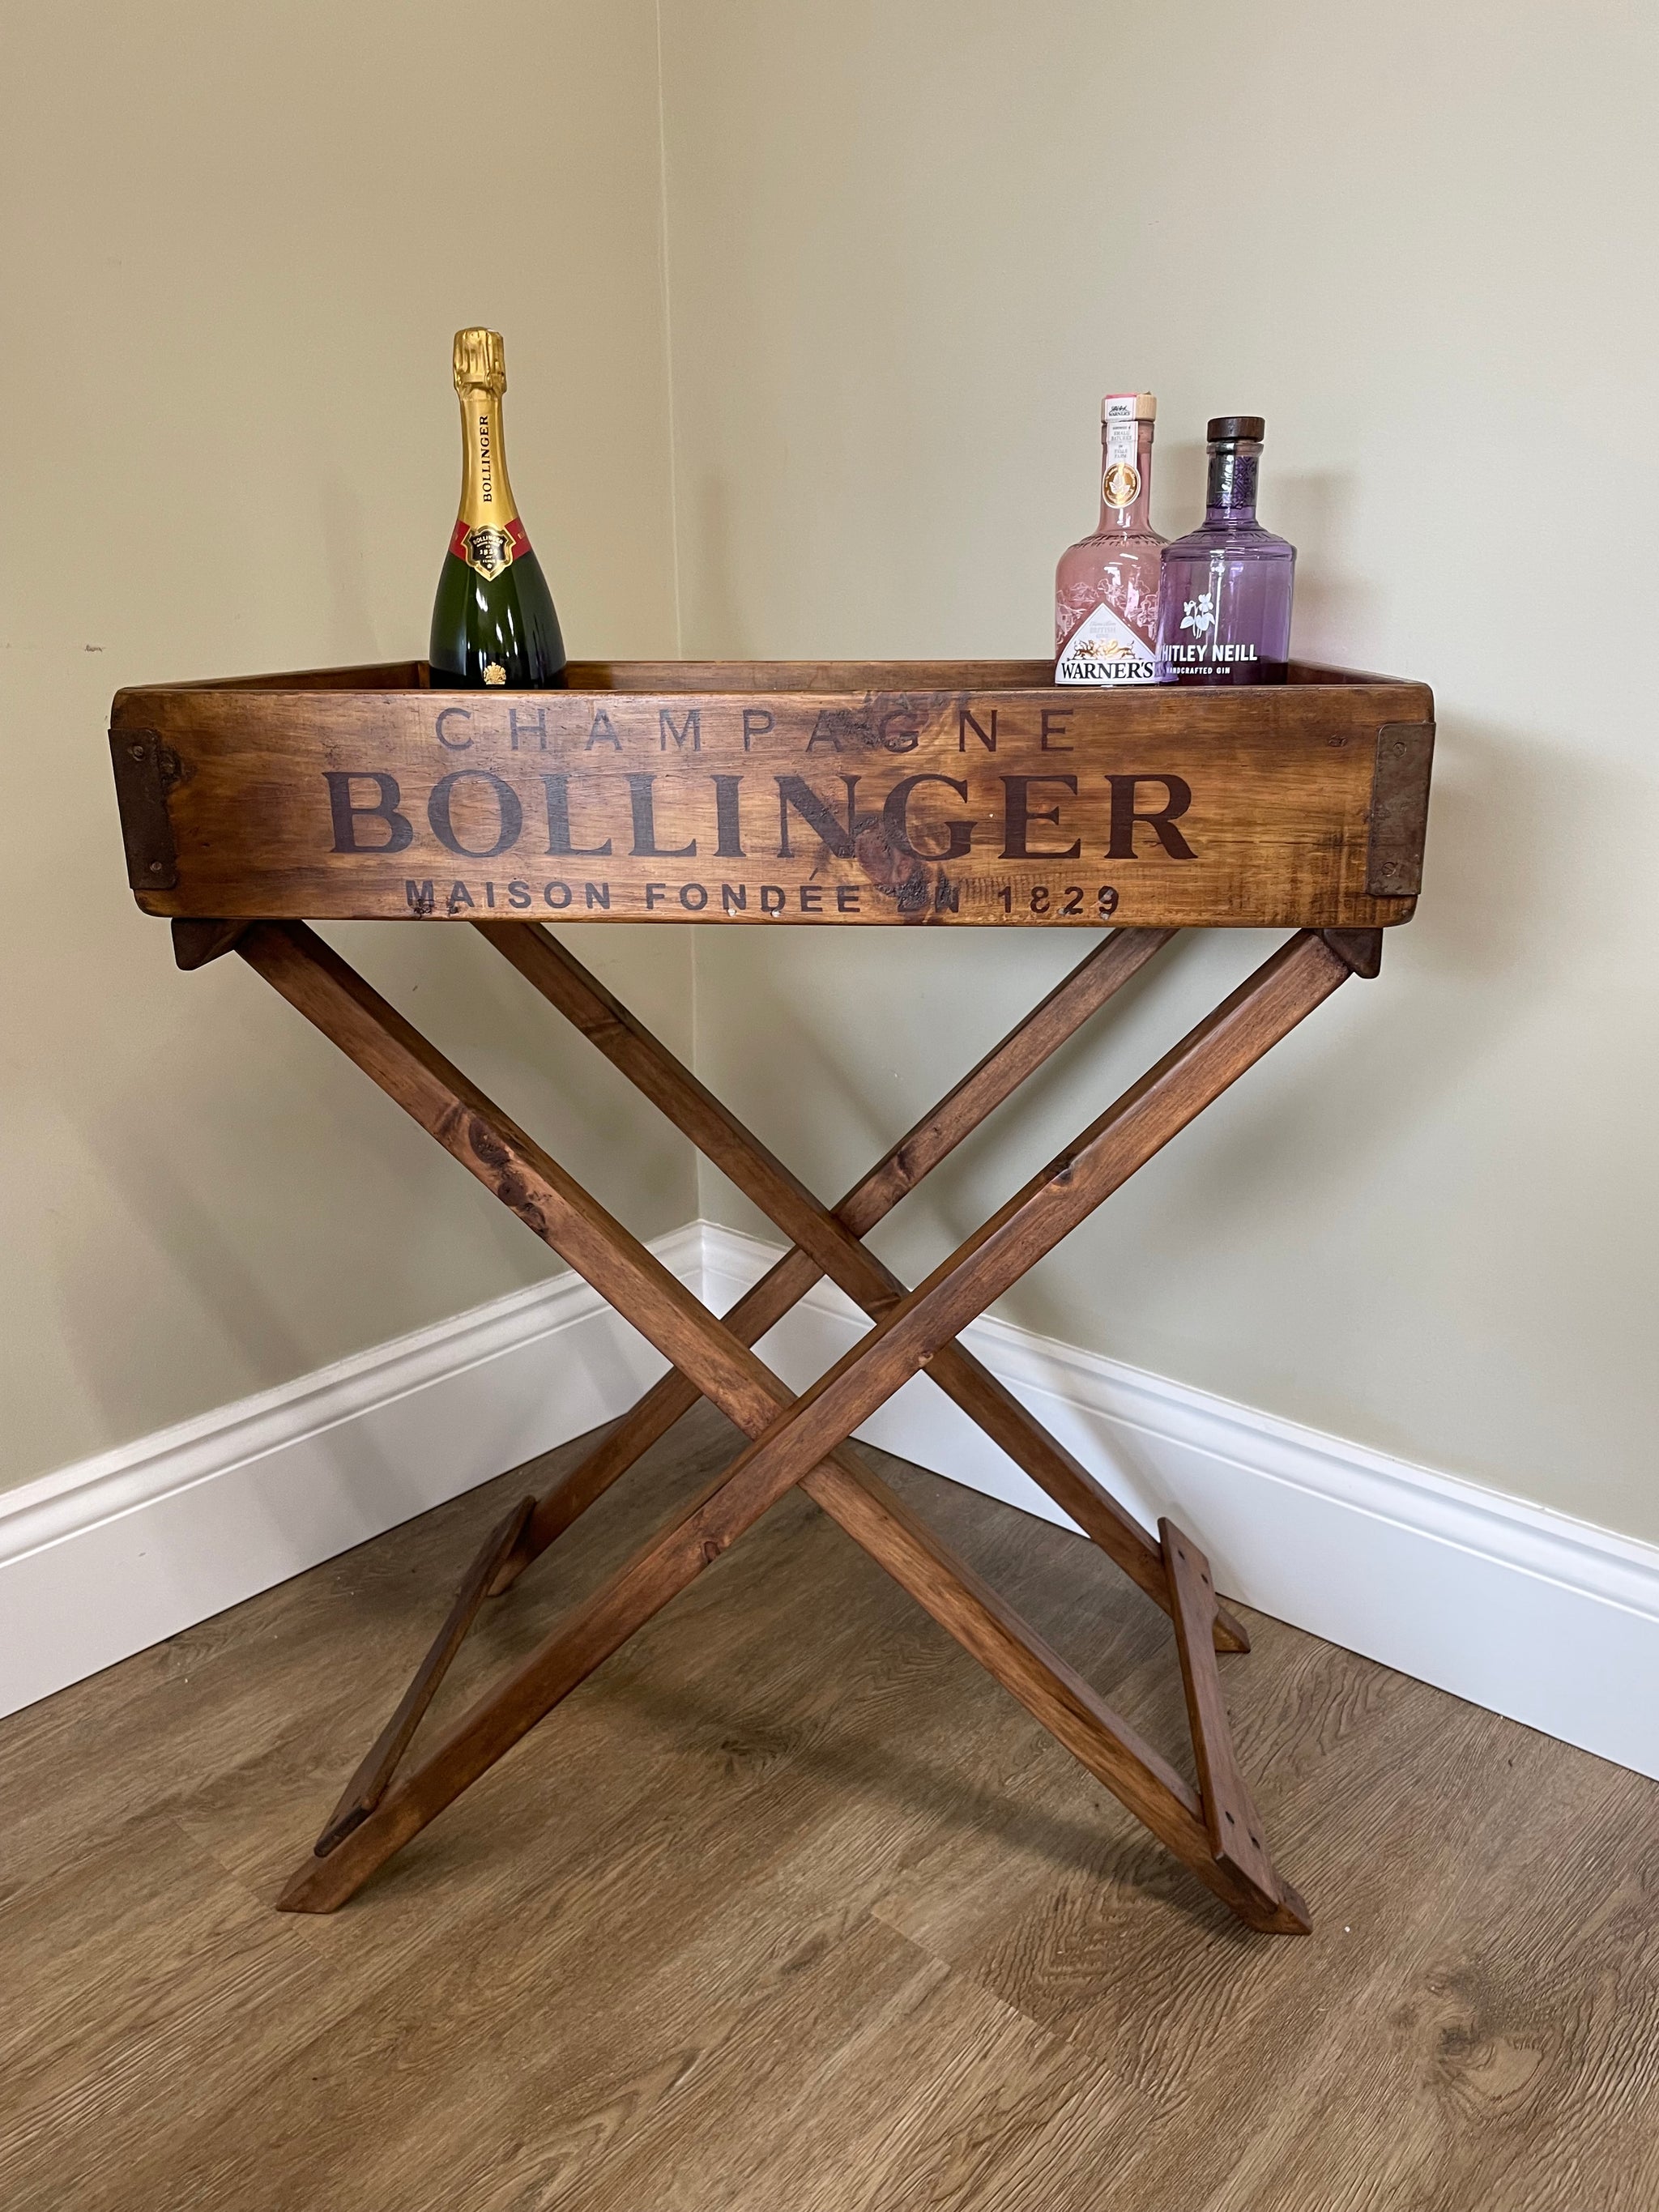 Butler Tray - Moet or Bollinger